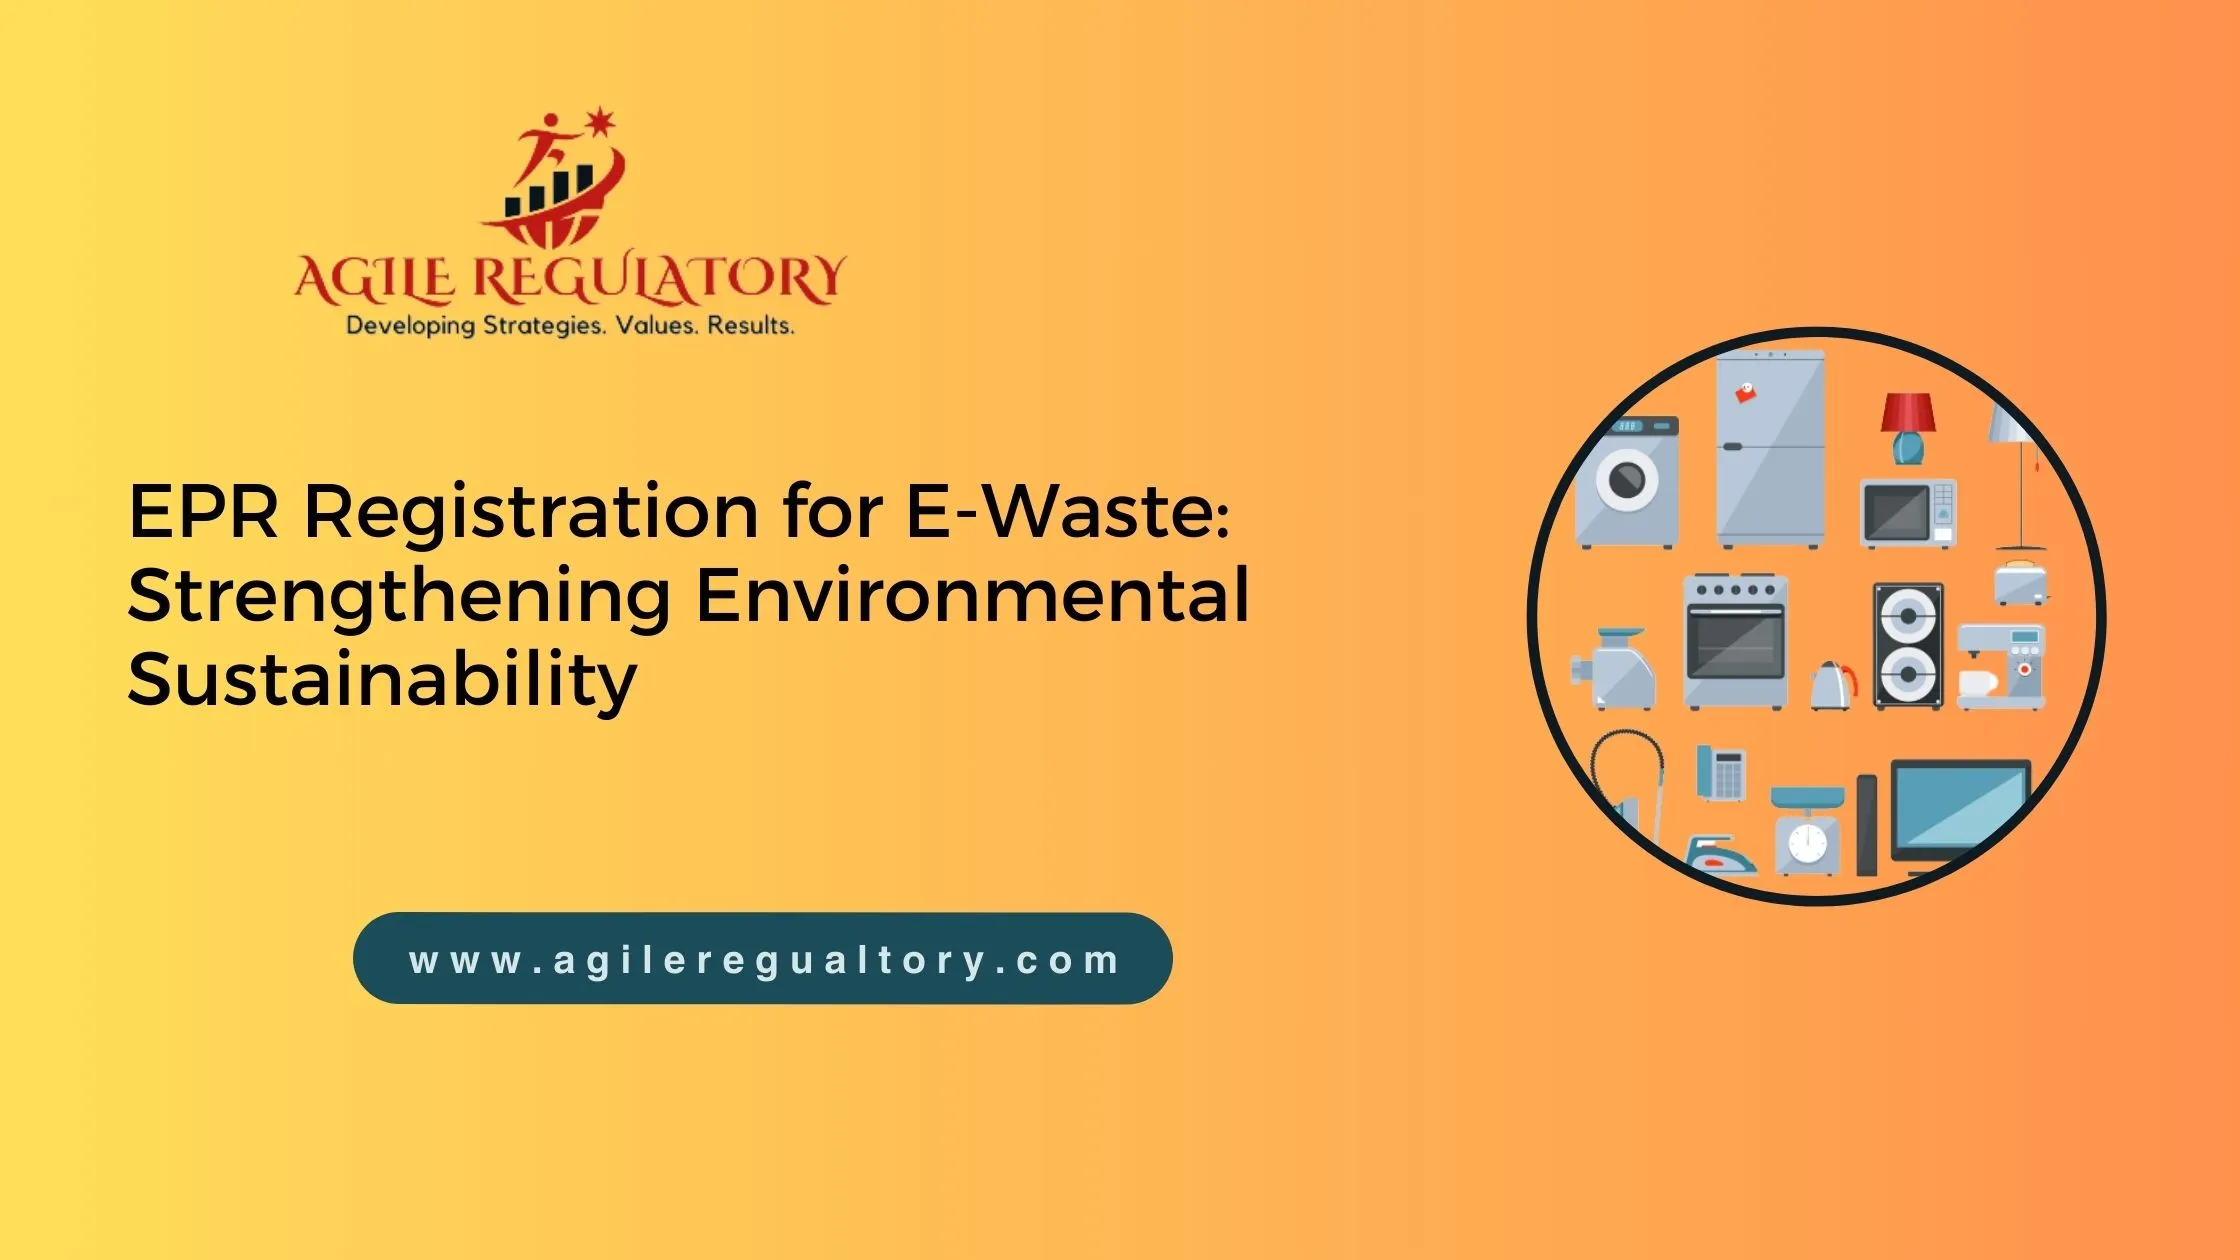 EPR Registration for E-Waste: Strengthening Environmental Sustainability